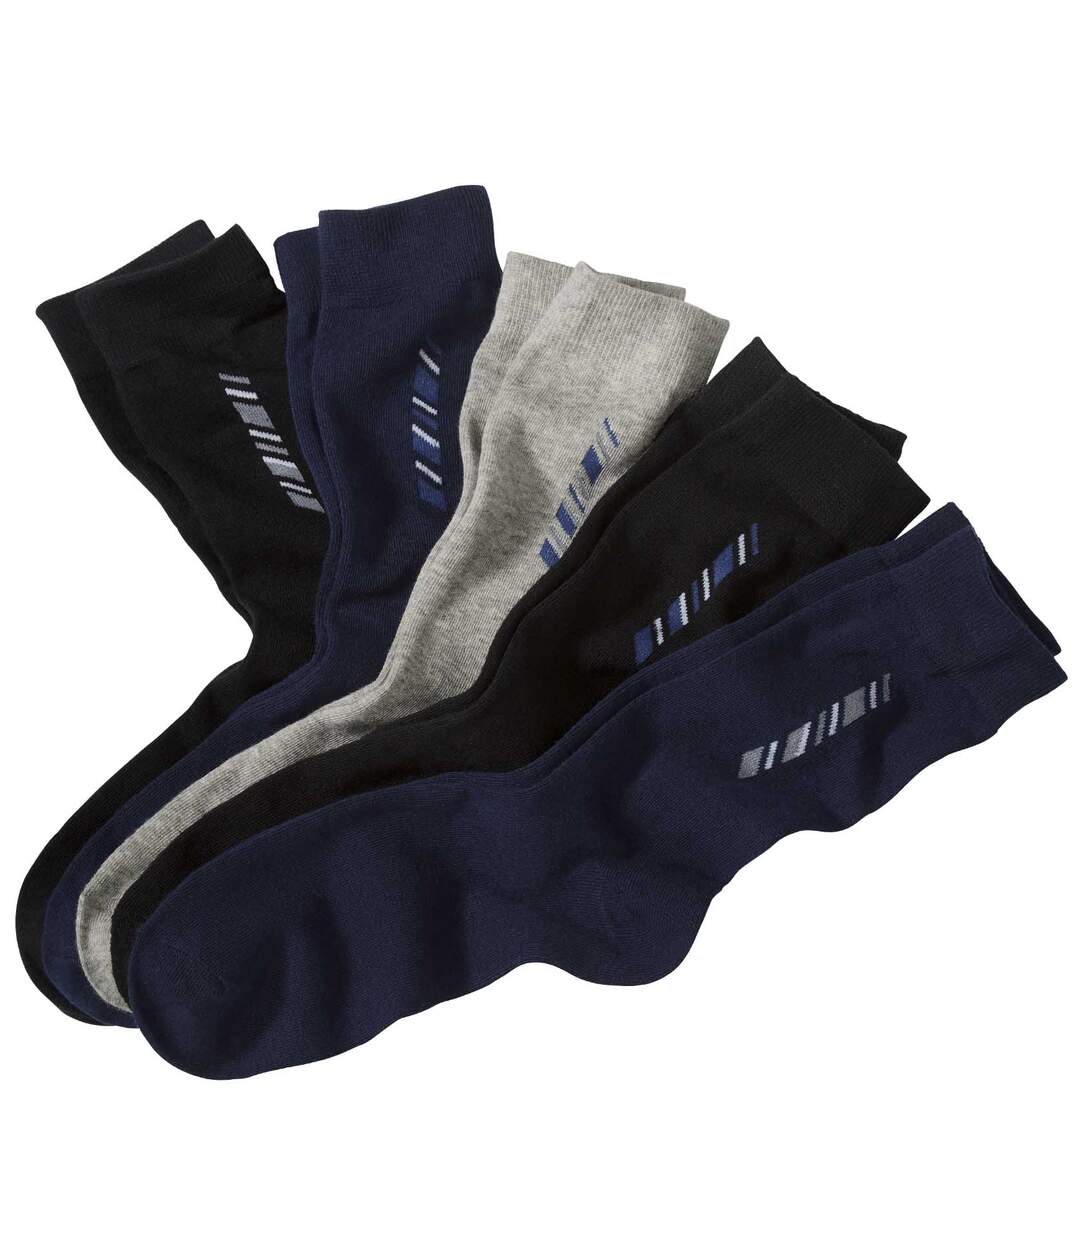 5 Pairs of Men's Patterned Socks - Black Navy Grey Atlas For Men